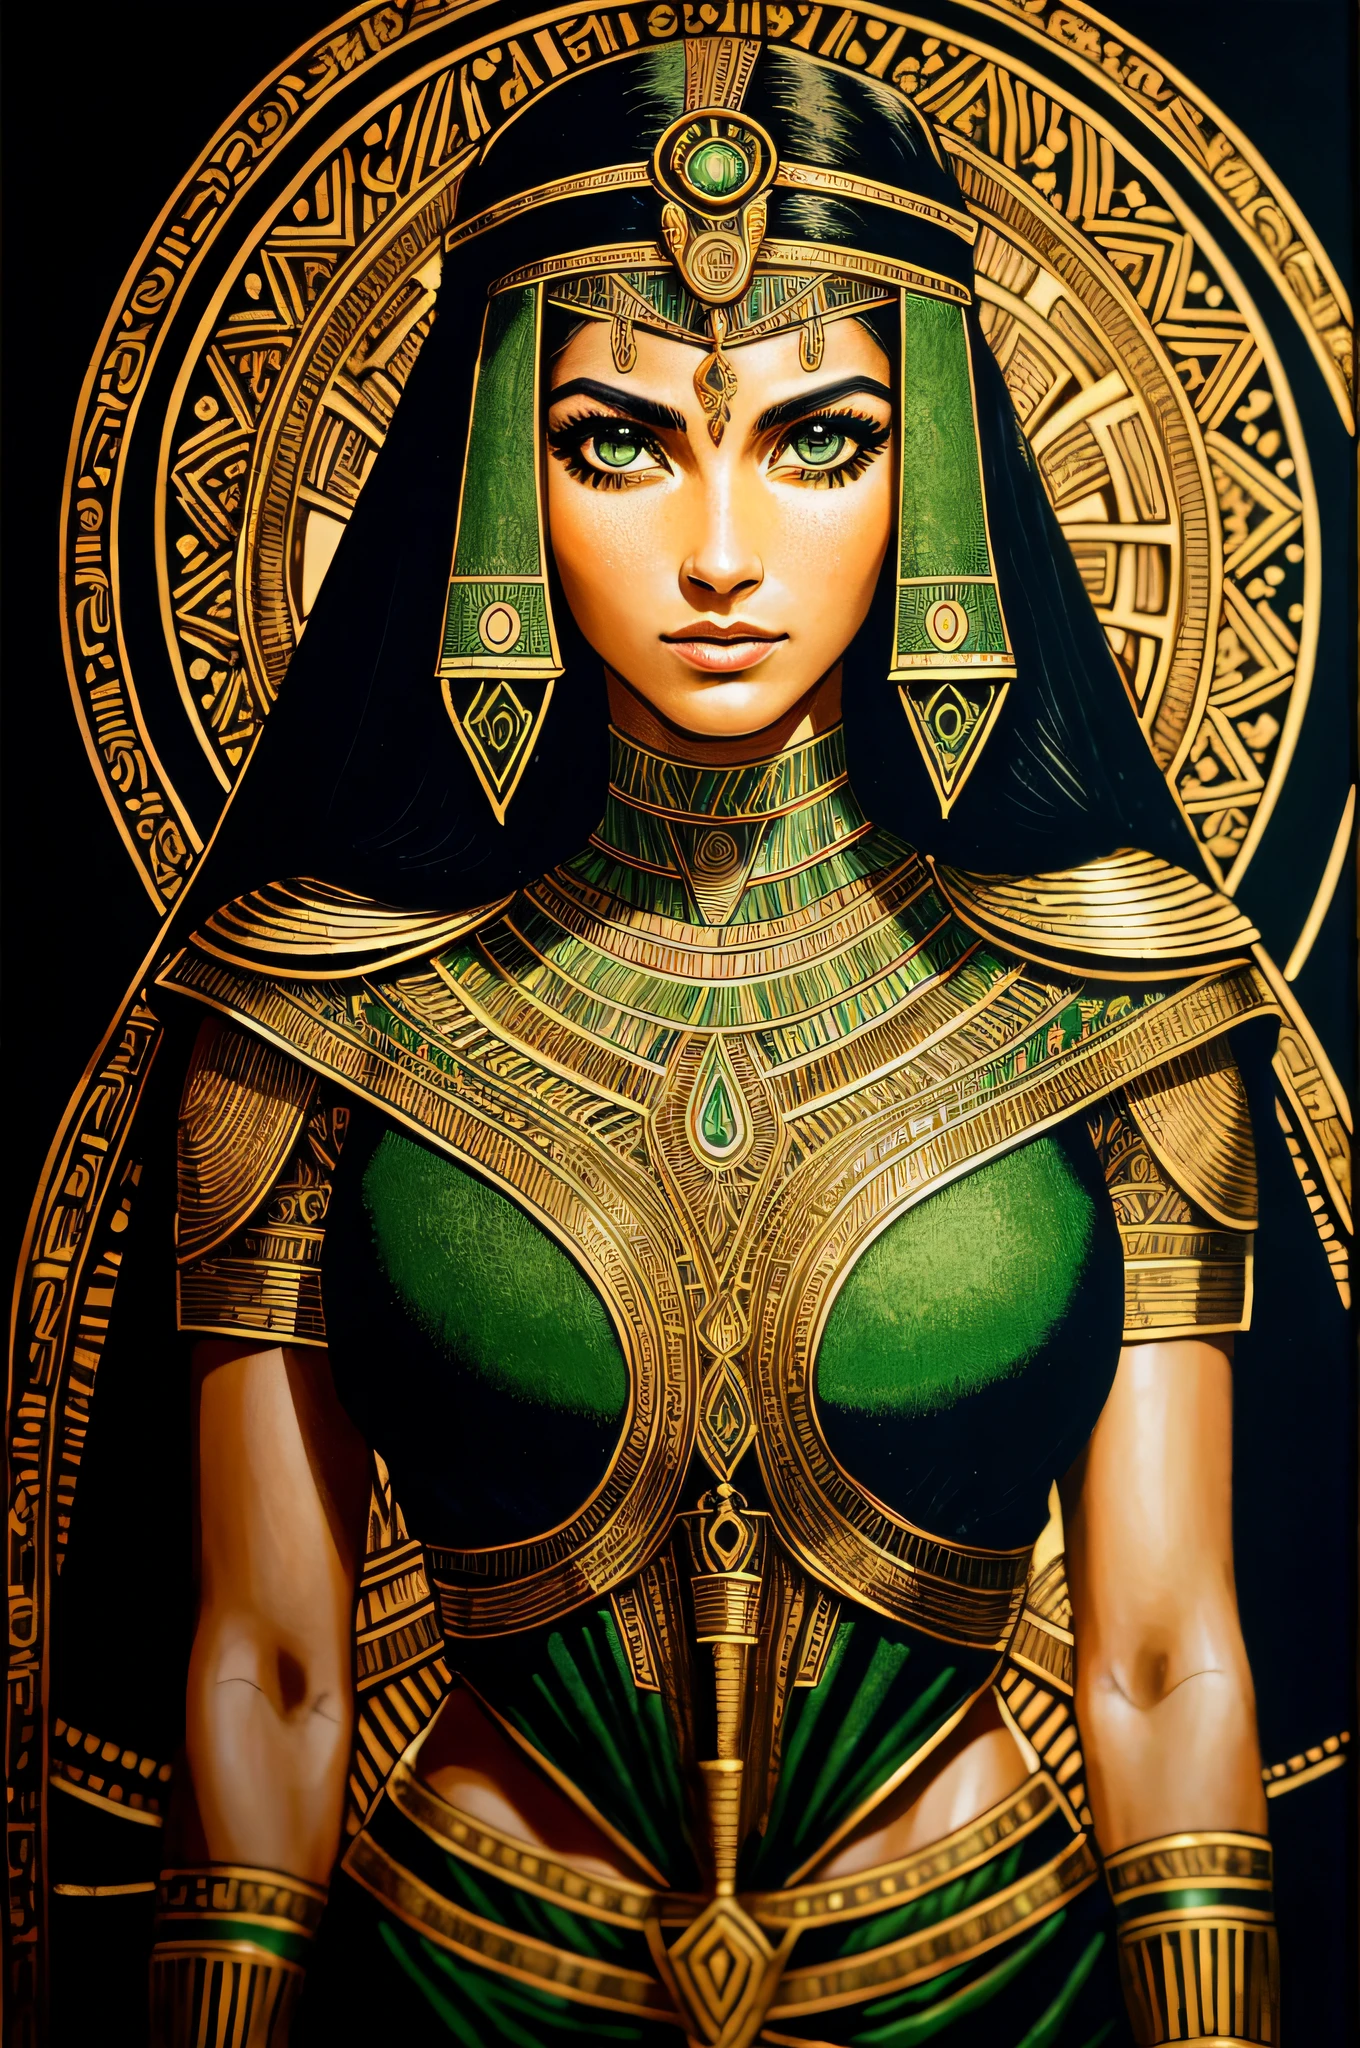 ผู้หญิงอียิปต์ผู้ใหญ่ 1 คน, ตาสีเขียว, ปีกผมสีดำ, ภาพเหมือน, ตามลำพัง, ร่างกายส่วนบน, มองไปที่ผู้ดู, พื้นหลังโดยละเอียด, ใบหน้าที่มีรายละเอียด,  เก่าอียิปต์AI, ธีมอียิปต์โบราณ,  นักรบป่าดุร้าย, เสื้อผ้าชนเผ่าสีชมพู, ออบซิเดียน, ท่าทางการป้องกัน, มีดหิน, พุ่มไม้, พืชมีพิษ, หิน,  อากาศชื้น, ความมืด, บรรยากาศภาพยนตร์,
ห้องมืด, แสงสลัว (zenยุ่งเหยิง, มันดาลา, ยุ่งเหยิง, enยุ่งเหยิง), (โทนสีทองและสีเขียว:0.5)
(สไตล์ 35 มม:1.1), ด้านหน้า, ผลงานชิ้นเอก, ภาพยนตร์ปี 1970, , แสงภาพยนตร์, เหมือนจริง, รายละเอียดความถี่สูง, ฟิล์ม35มม, (เนื้อฟิล์ม), เสียงฟิล์ม,